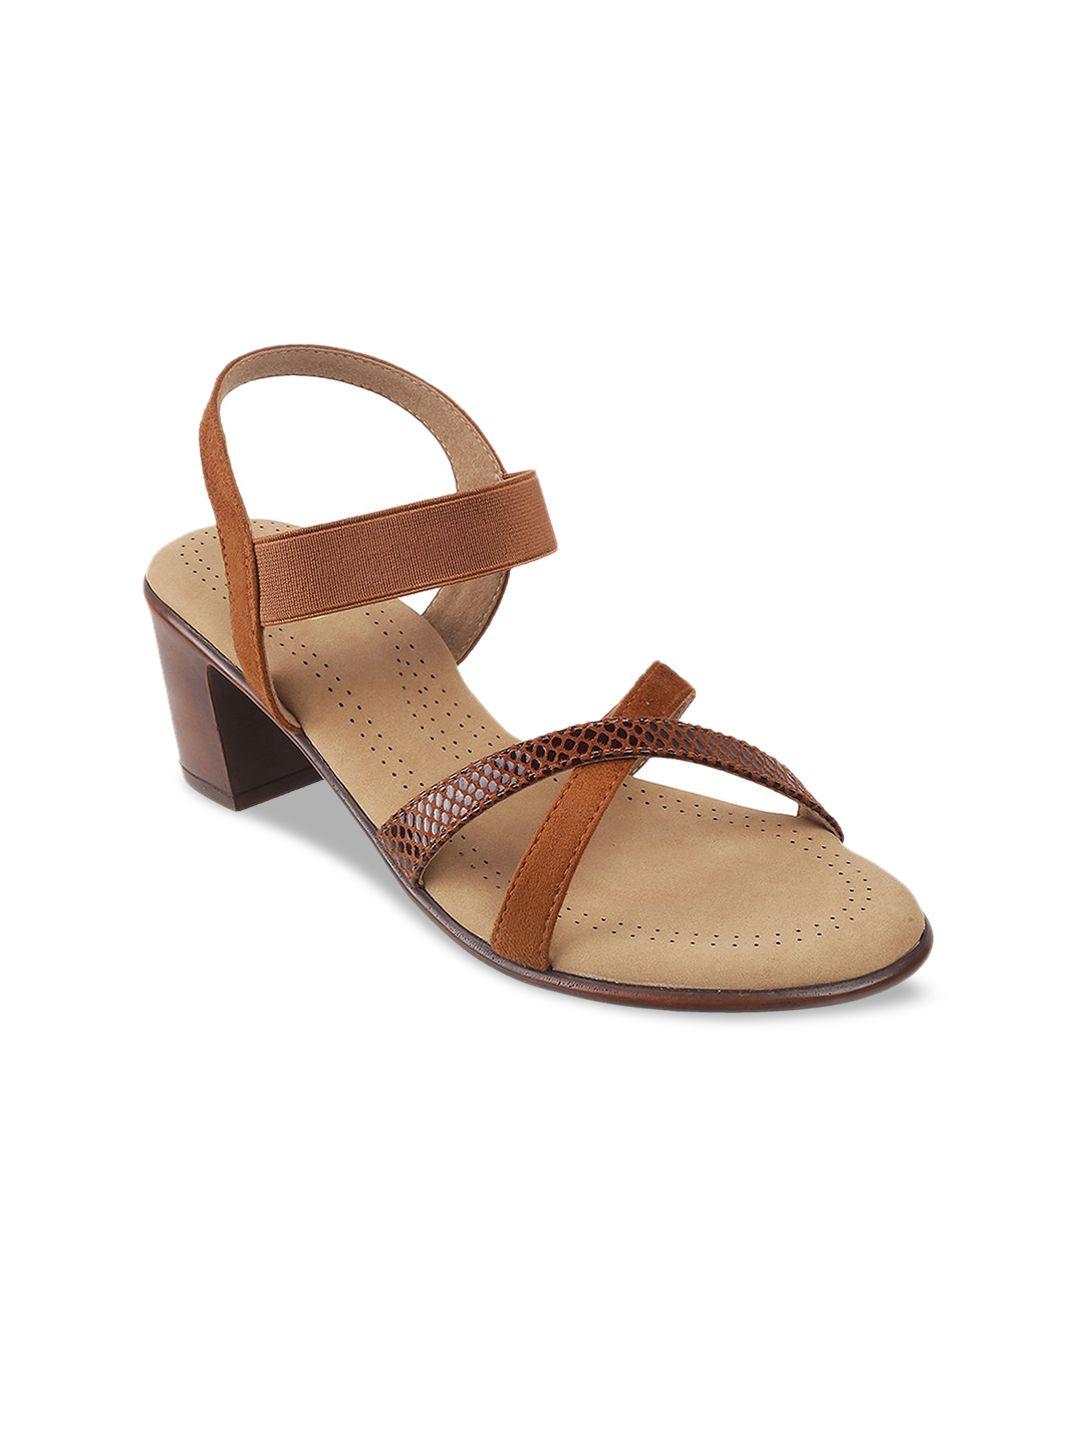 metro brown block sandals heels